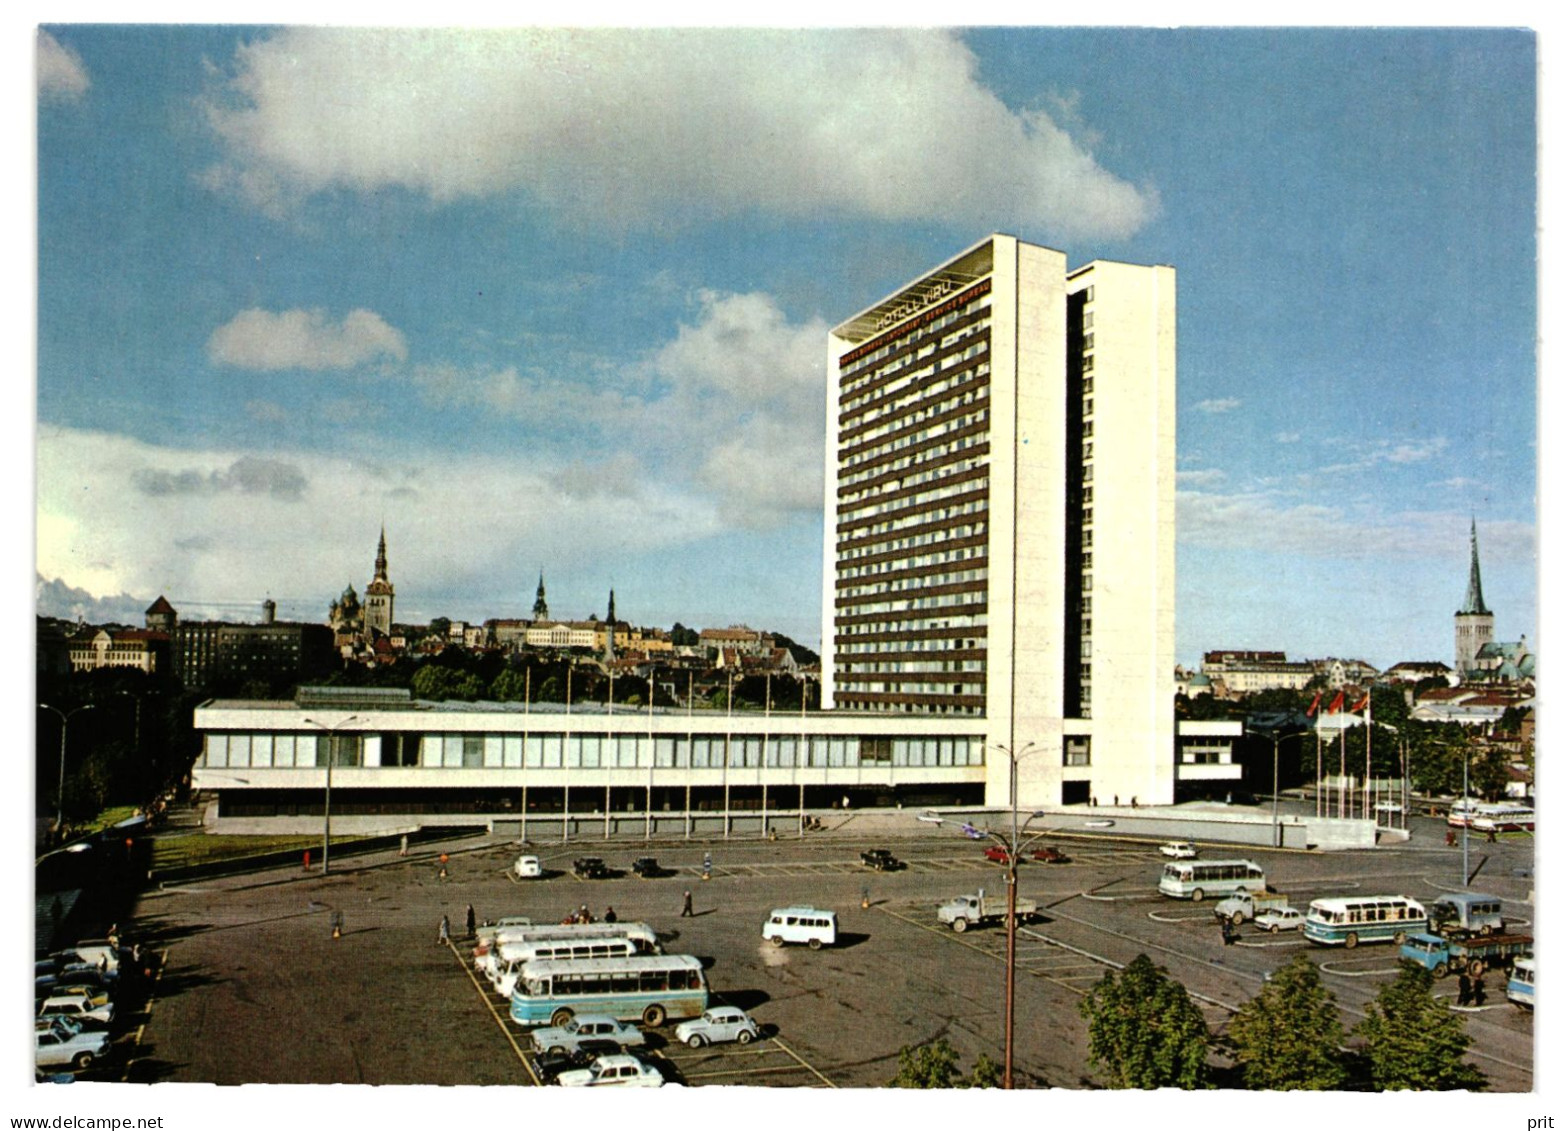 Hotel Viru, Tallinn Soviet Estonia 1970s Unused Postcard. Publisher Hotel Viru - Estland